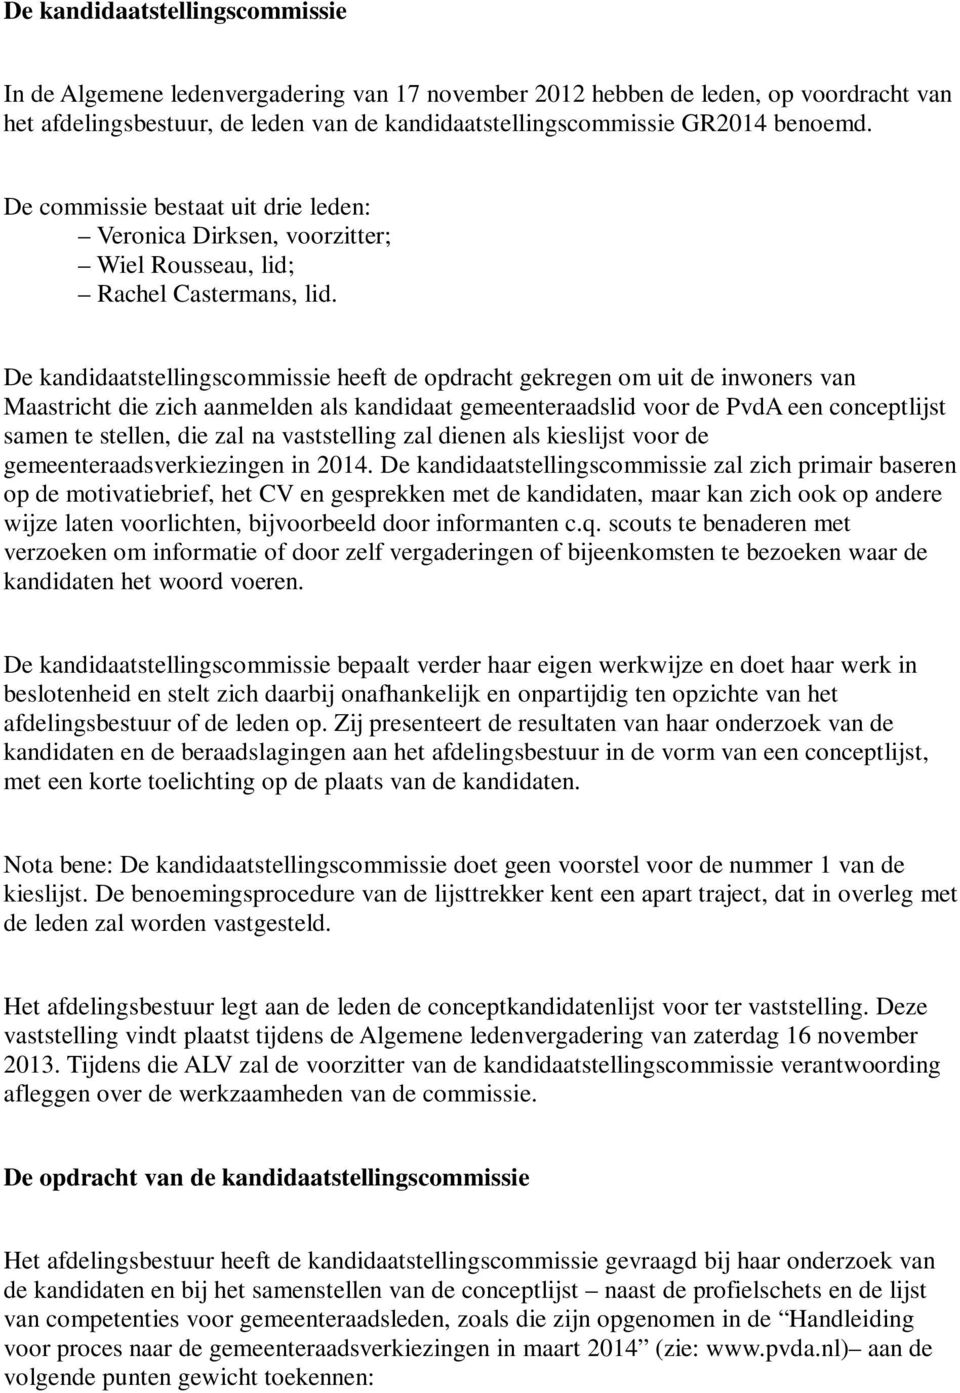 De kandidaatstellingscommissie heeft de opdracht gekregen om uit de inwoners van Maastricht die zich aanmelden als kandidaat gemeenteraadslid voor de PvdA een conceptlijst samen te stellen, die zal